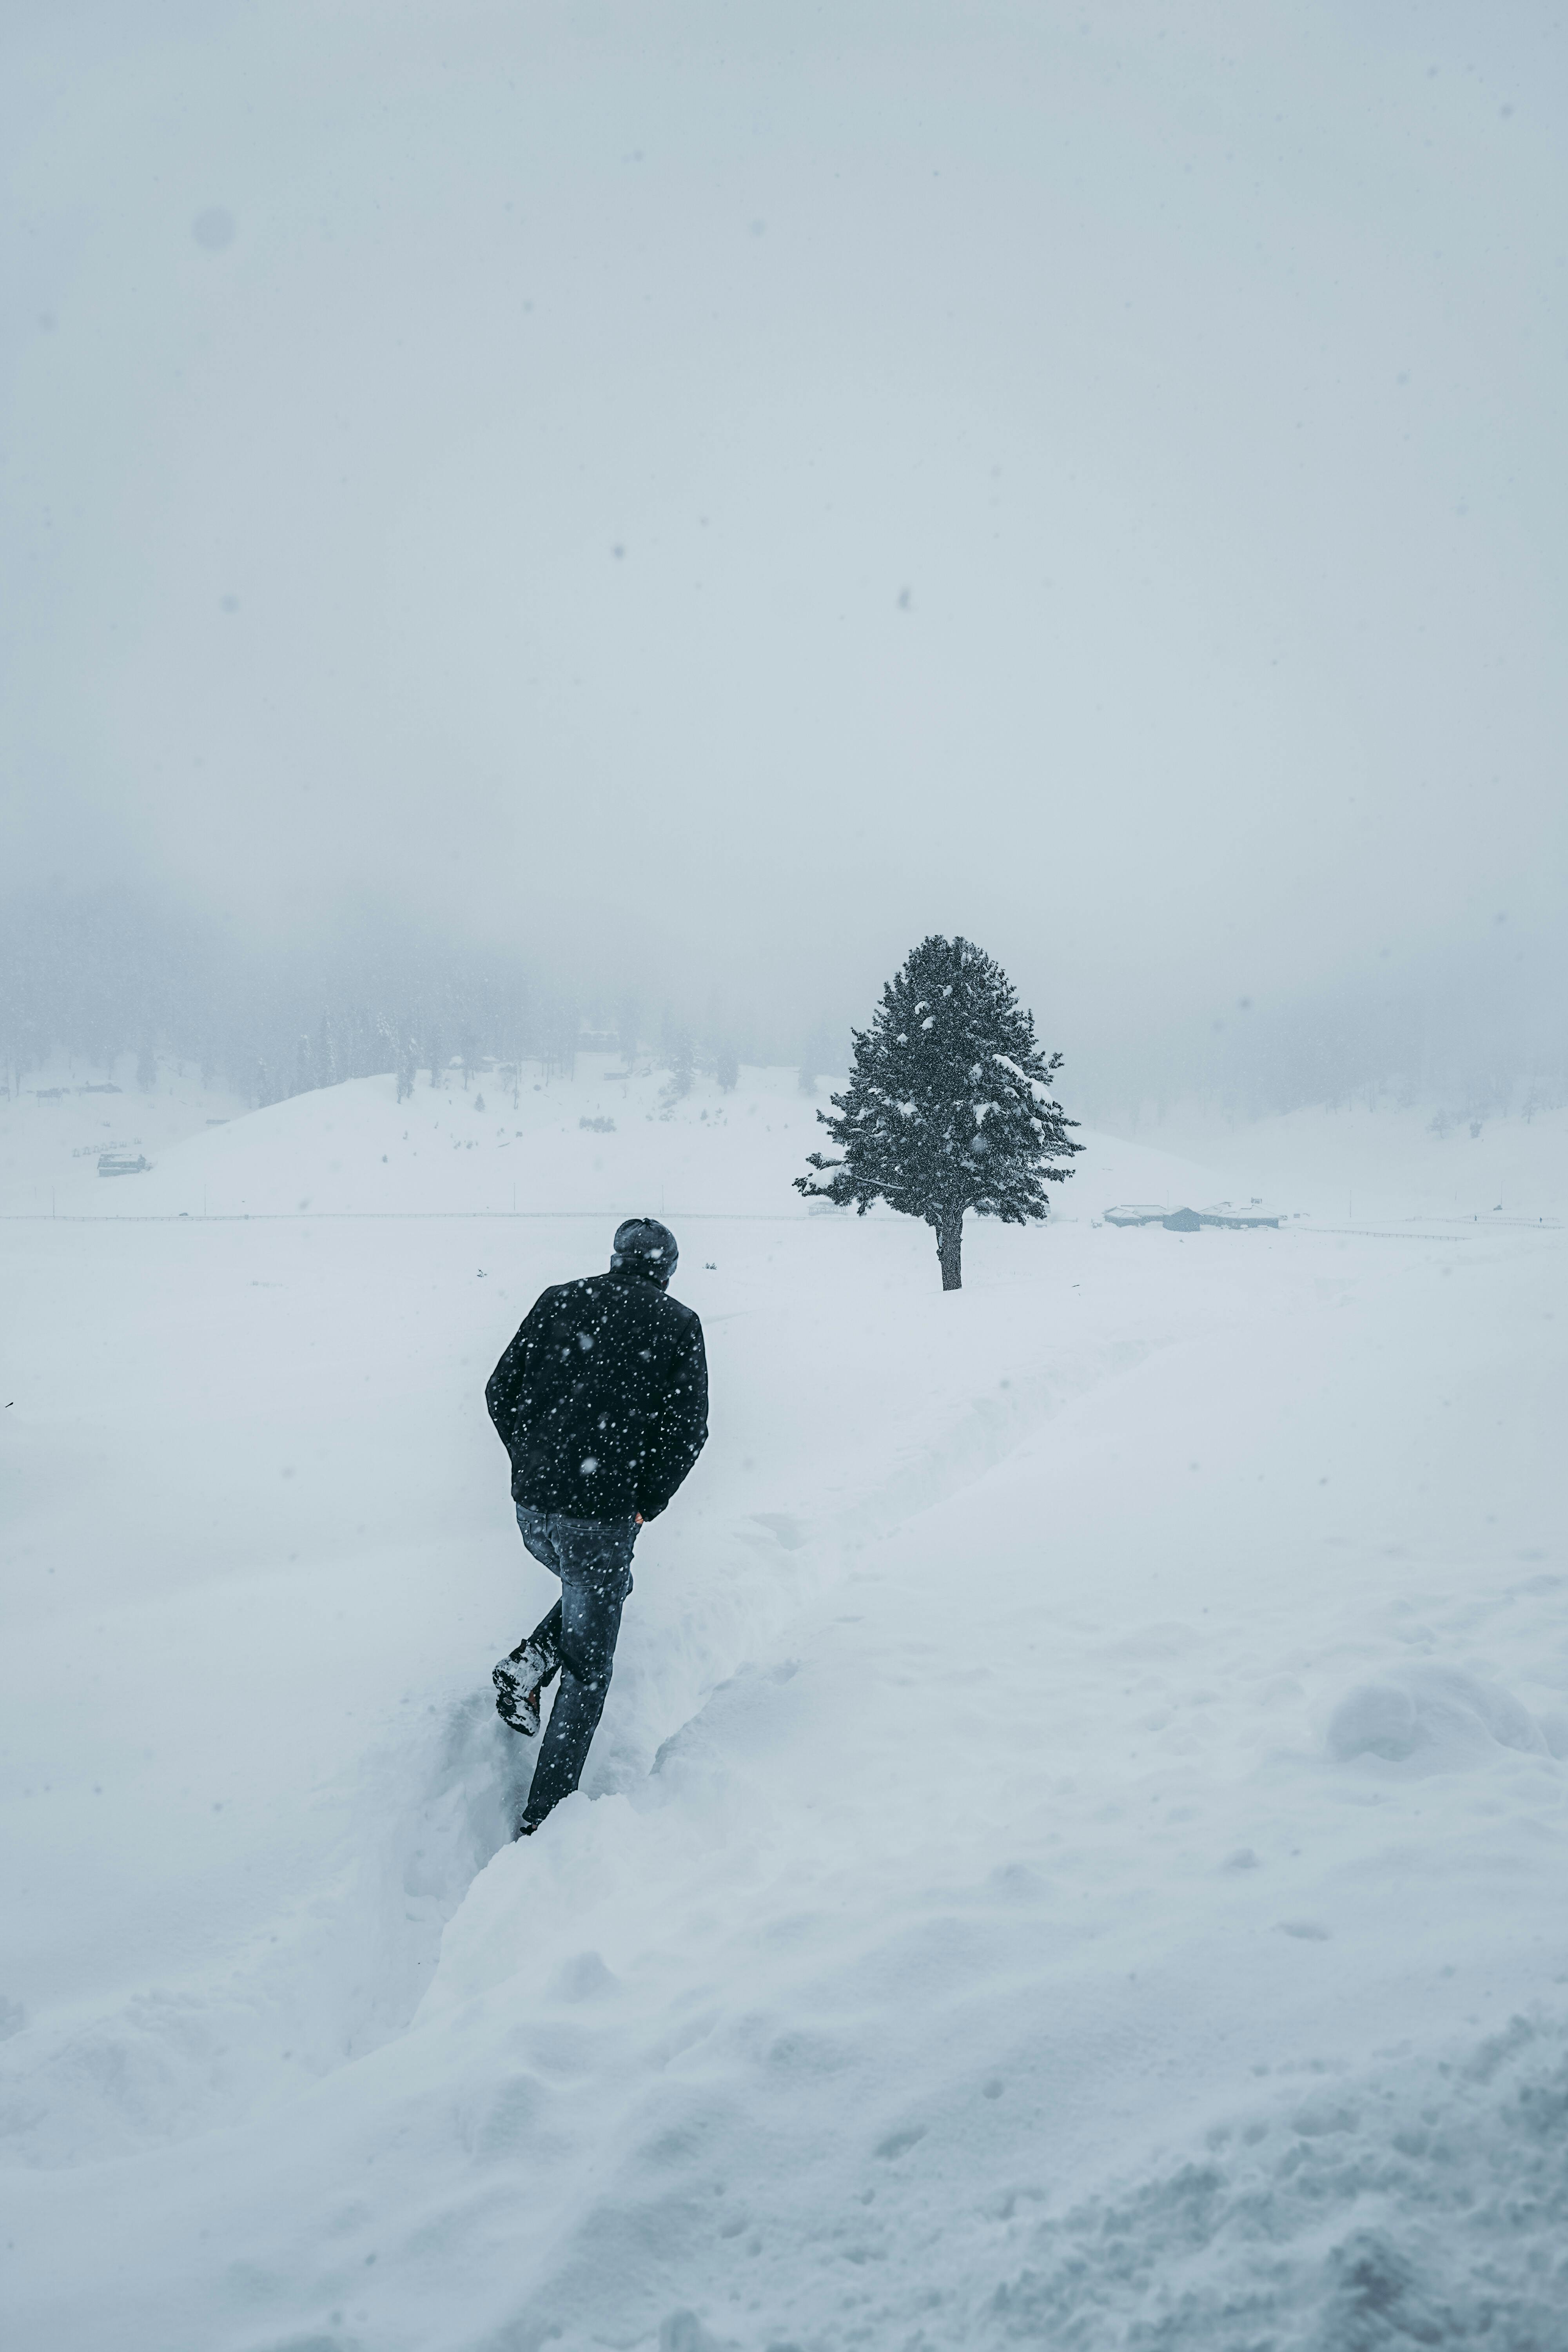 Snowstorm Men Black winter long coat– Al Janat